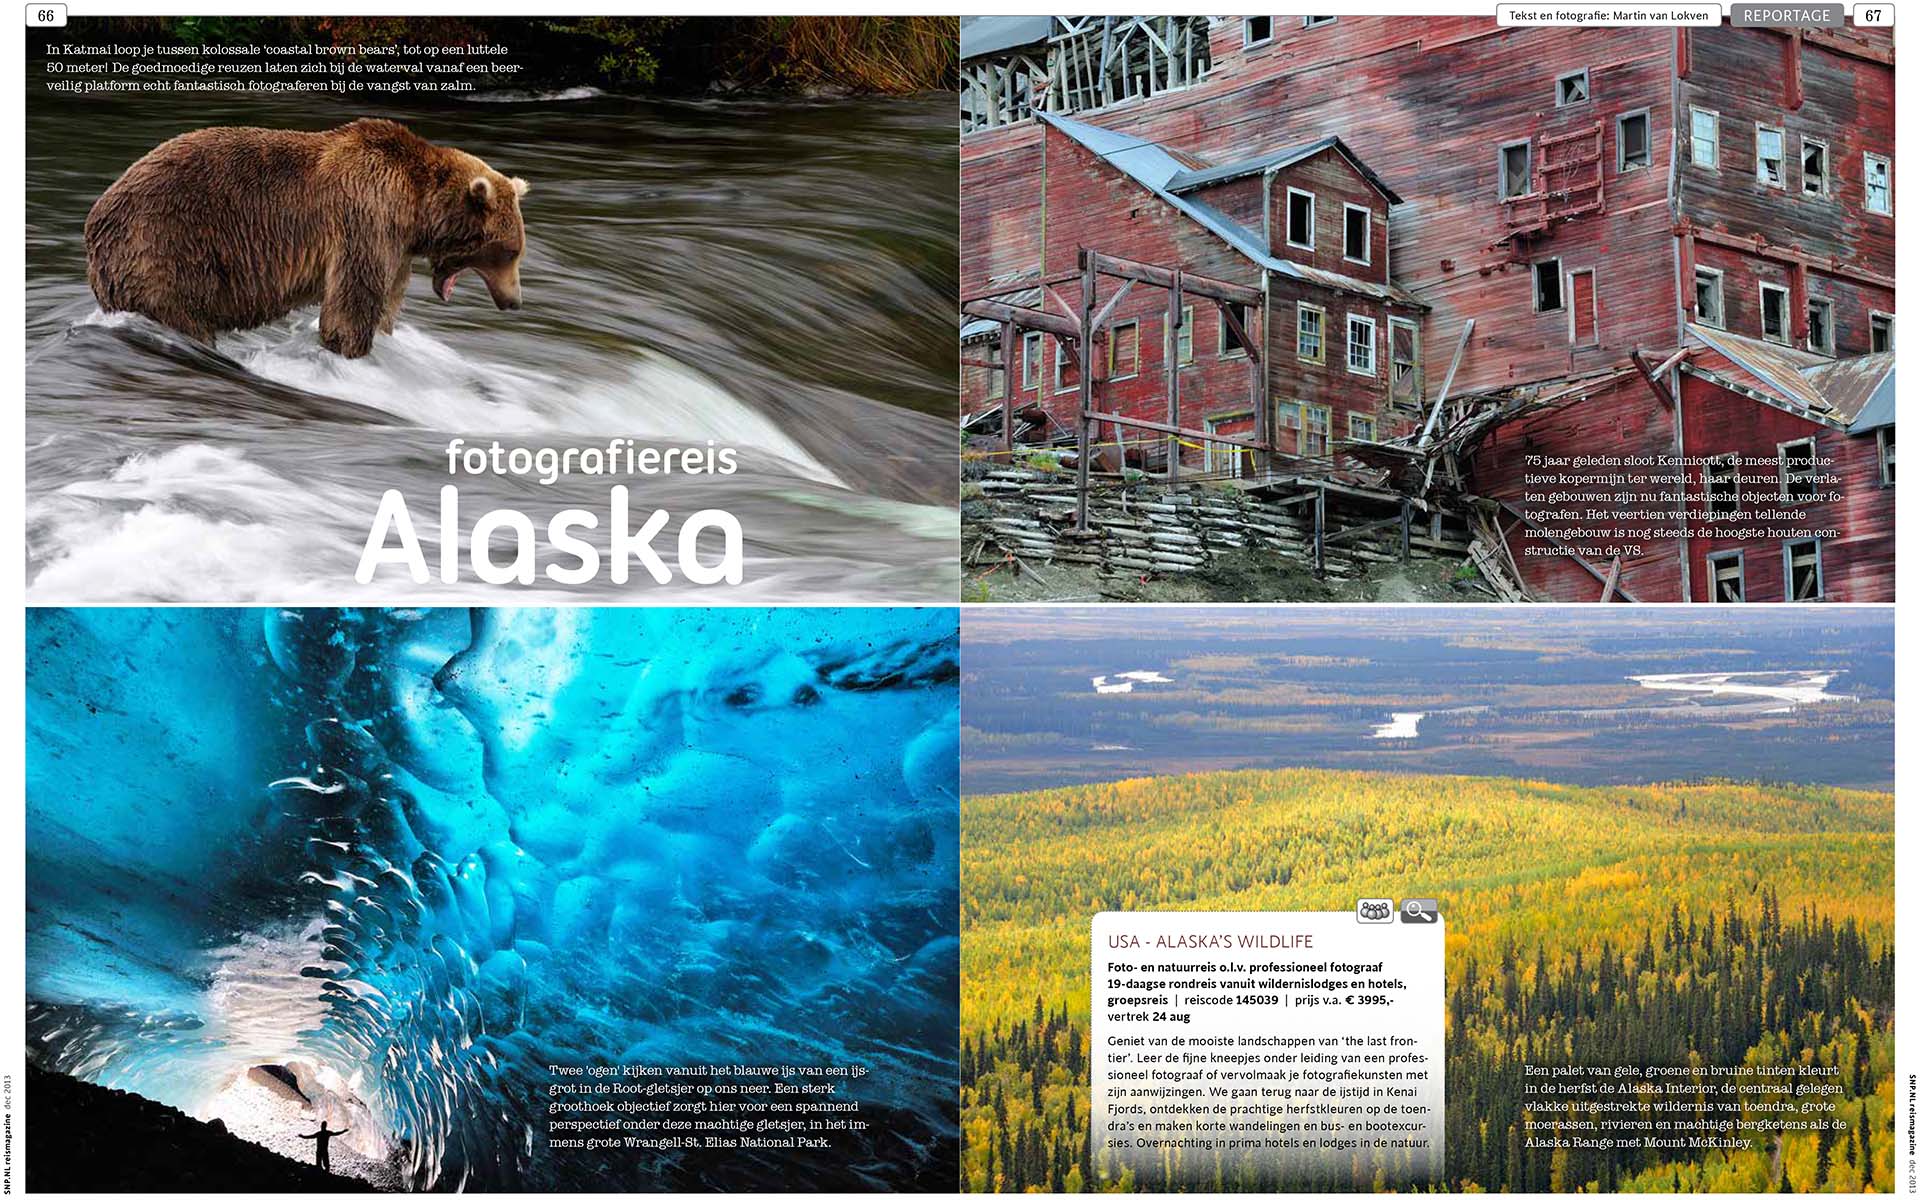 Aankondiging van een fotografiereis naar Alaska met SNP Natuurreizen.